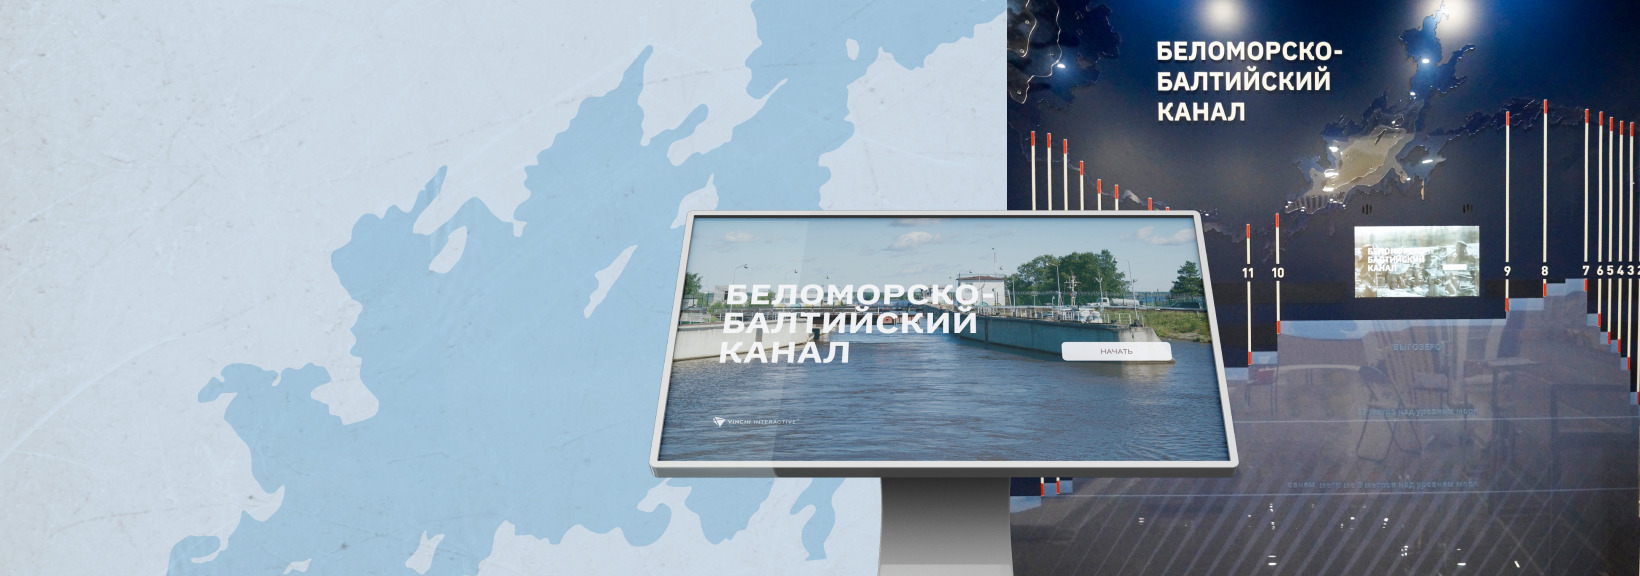 Интерактивная карта «Беломорско-Балтийский канал»